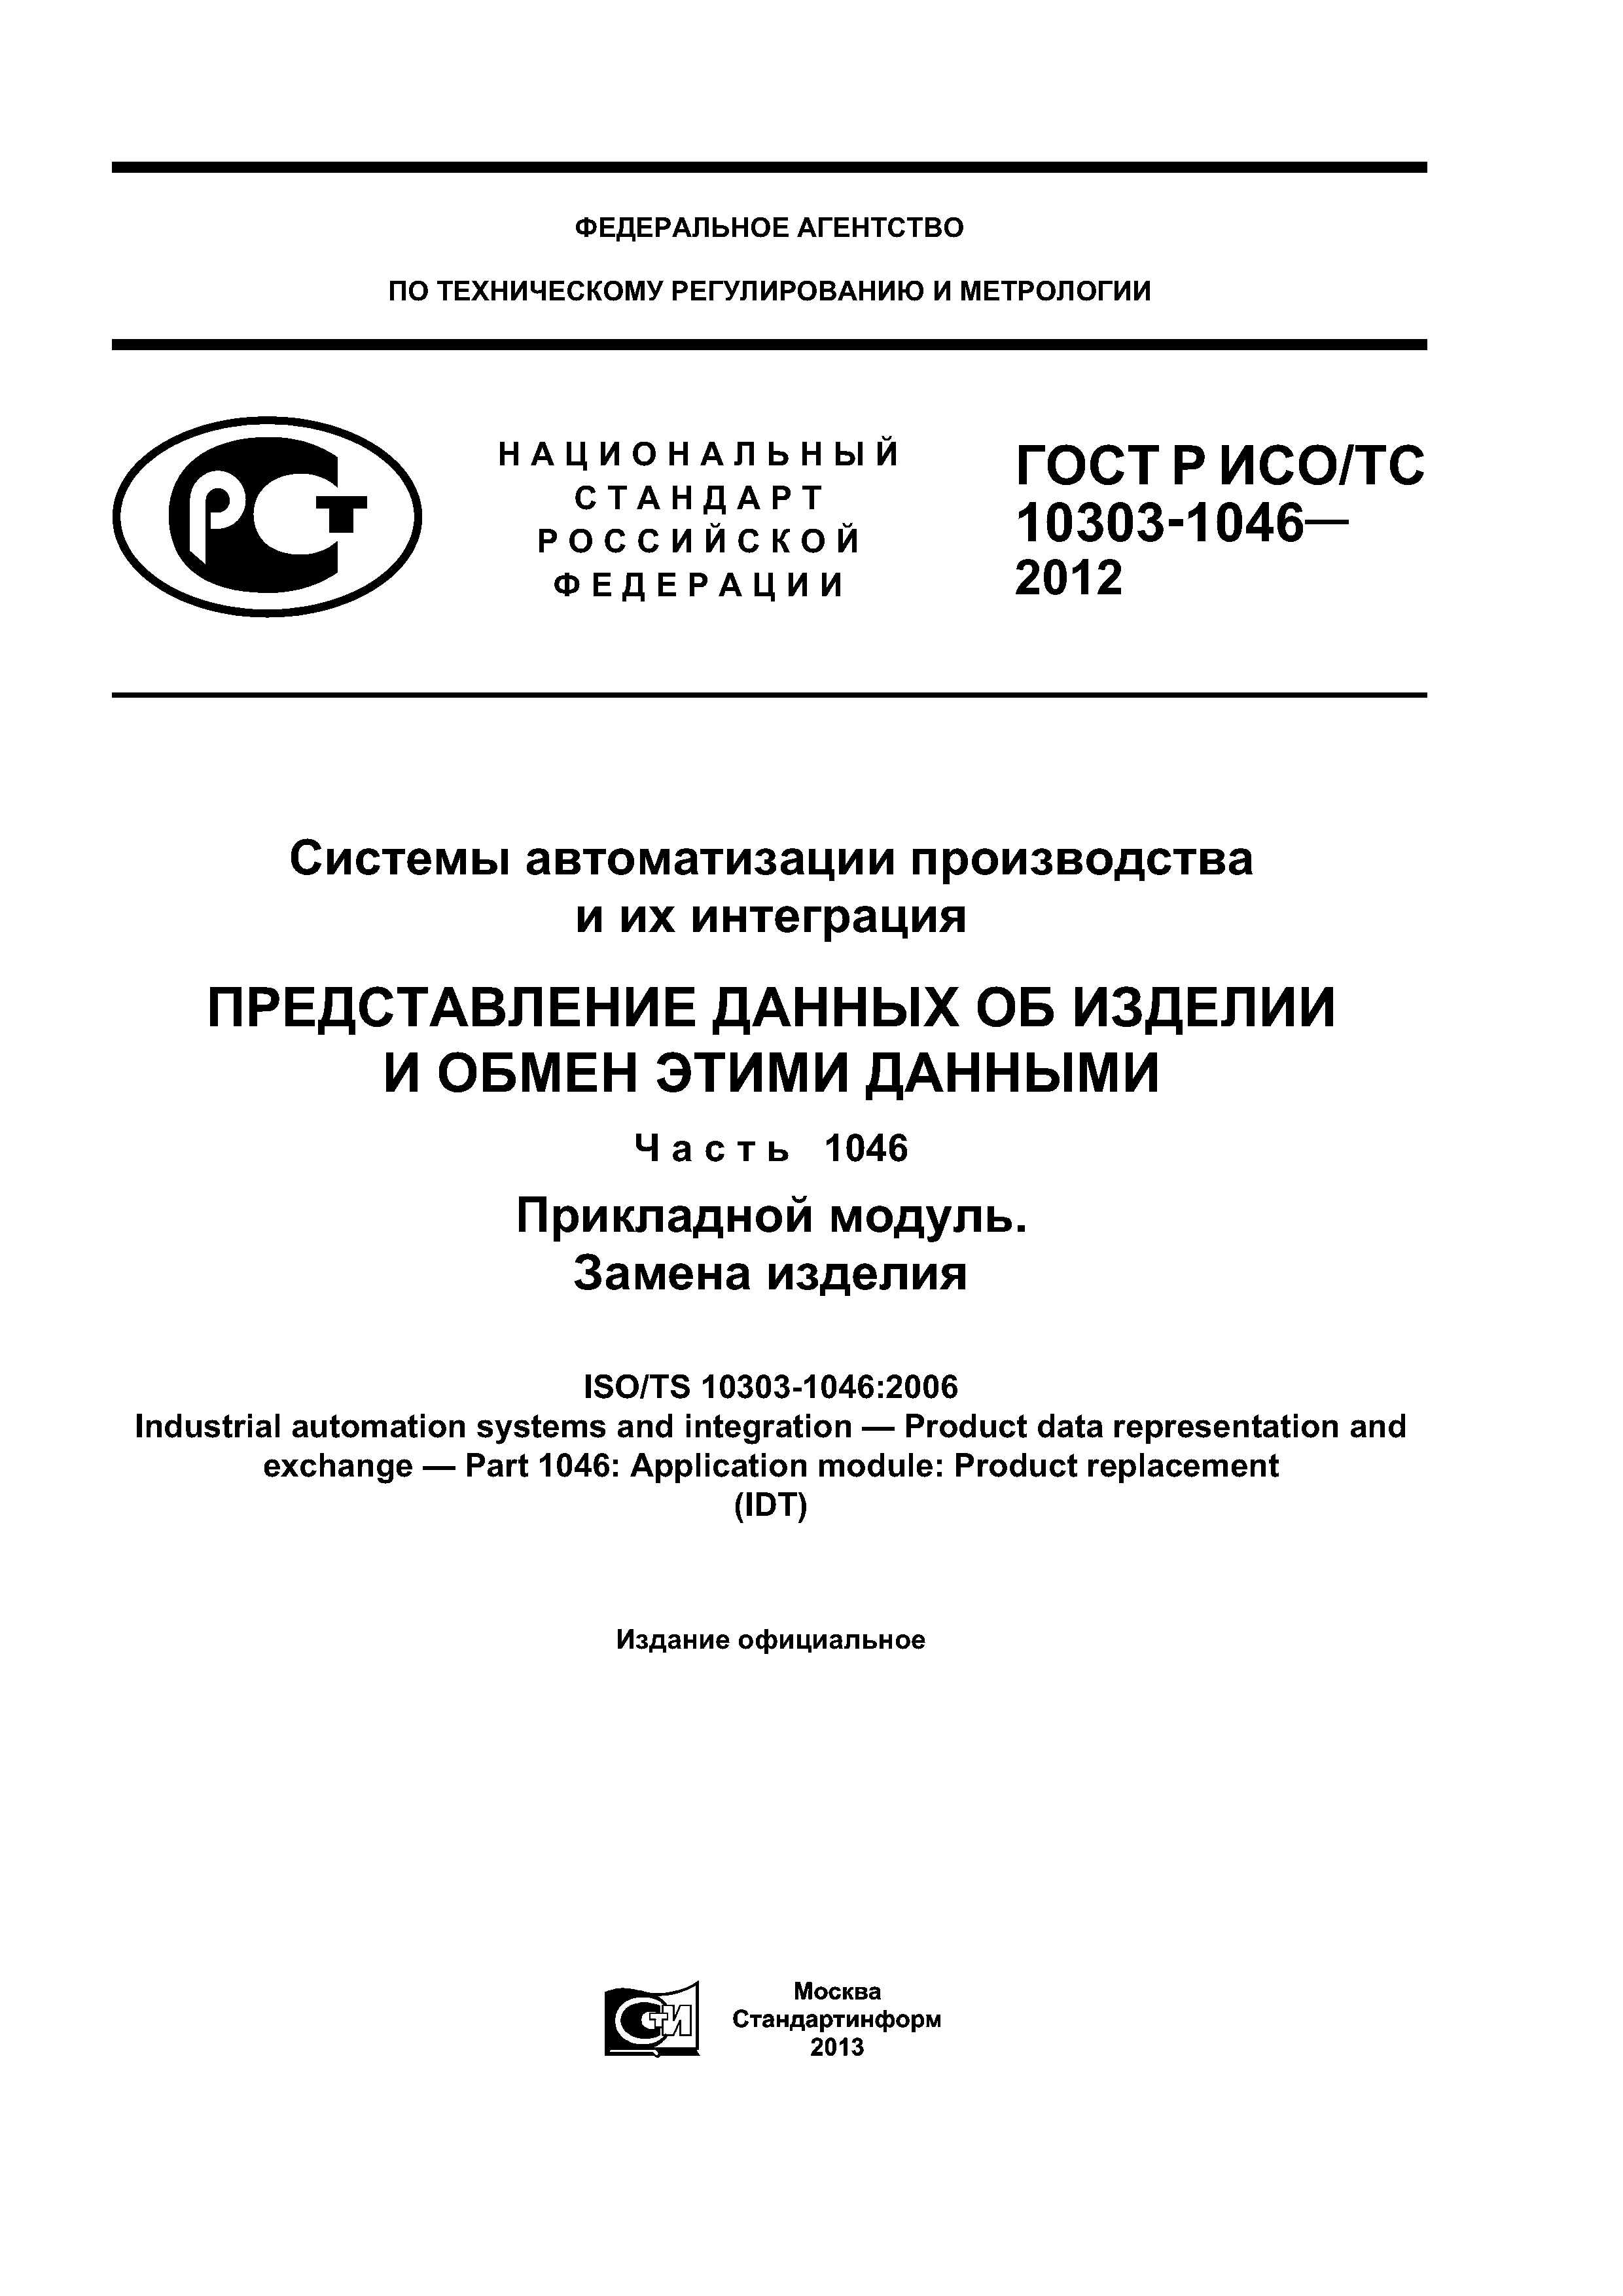 ГОСТ Р ИСО/ТС 10303-1046-2012